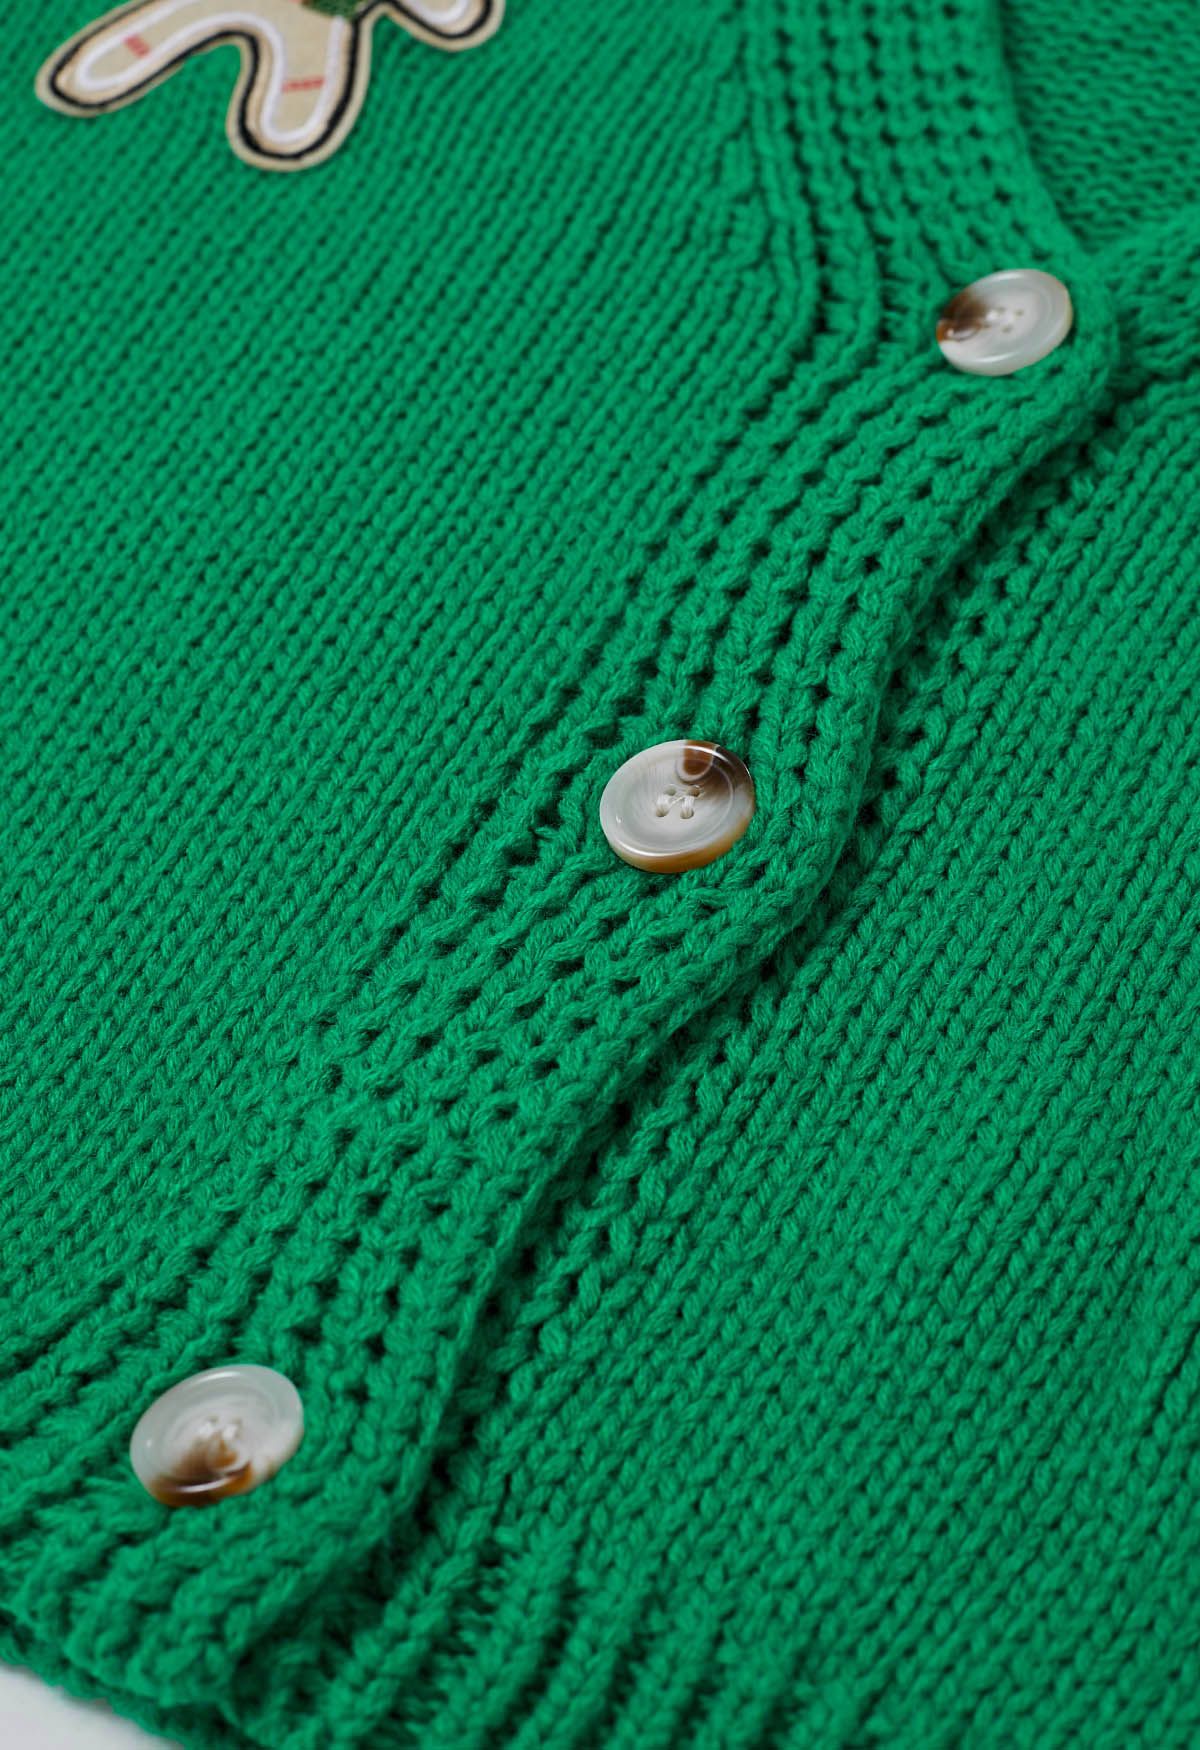 Cárdigan de punto de hombre de jengibre con lentejuelas y calcetín navideño en verde